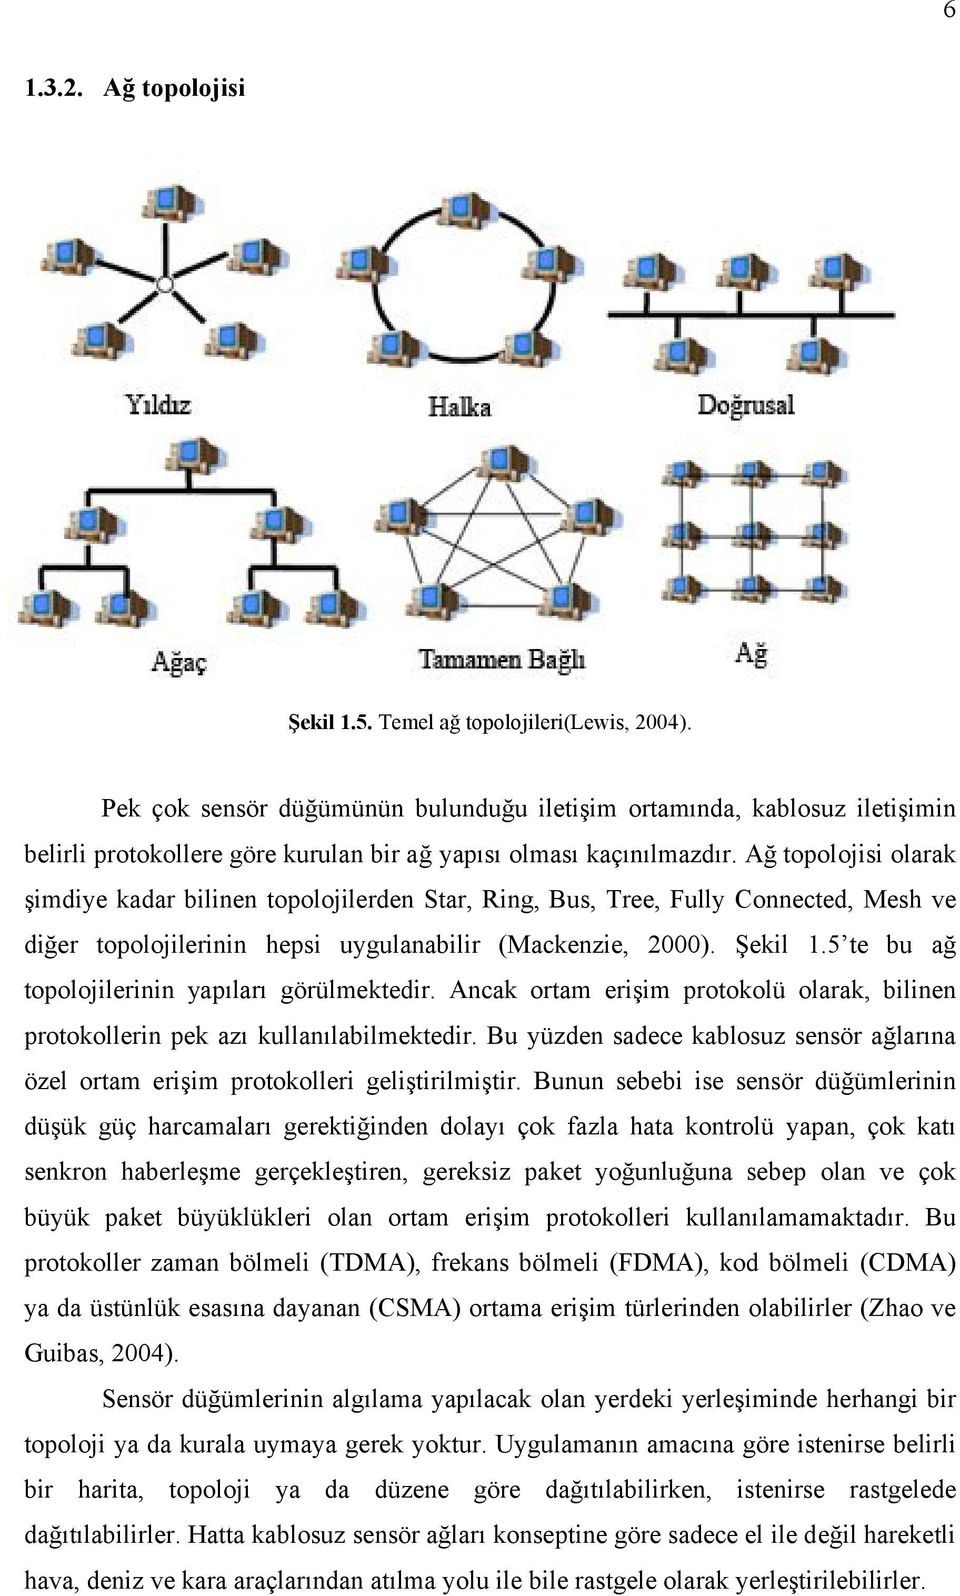 Ağ topolojisi olarak şimdiye kadar bilinen topolojilerden Star, Ring, Bus, Tree, Fully Connected, Mesh ve diğer topolojilerinin hepsi uygulanabilir (Mackenzie, 2000). Şekil 1.